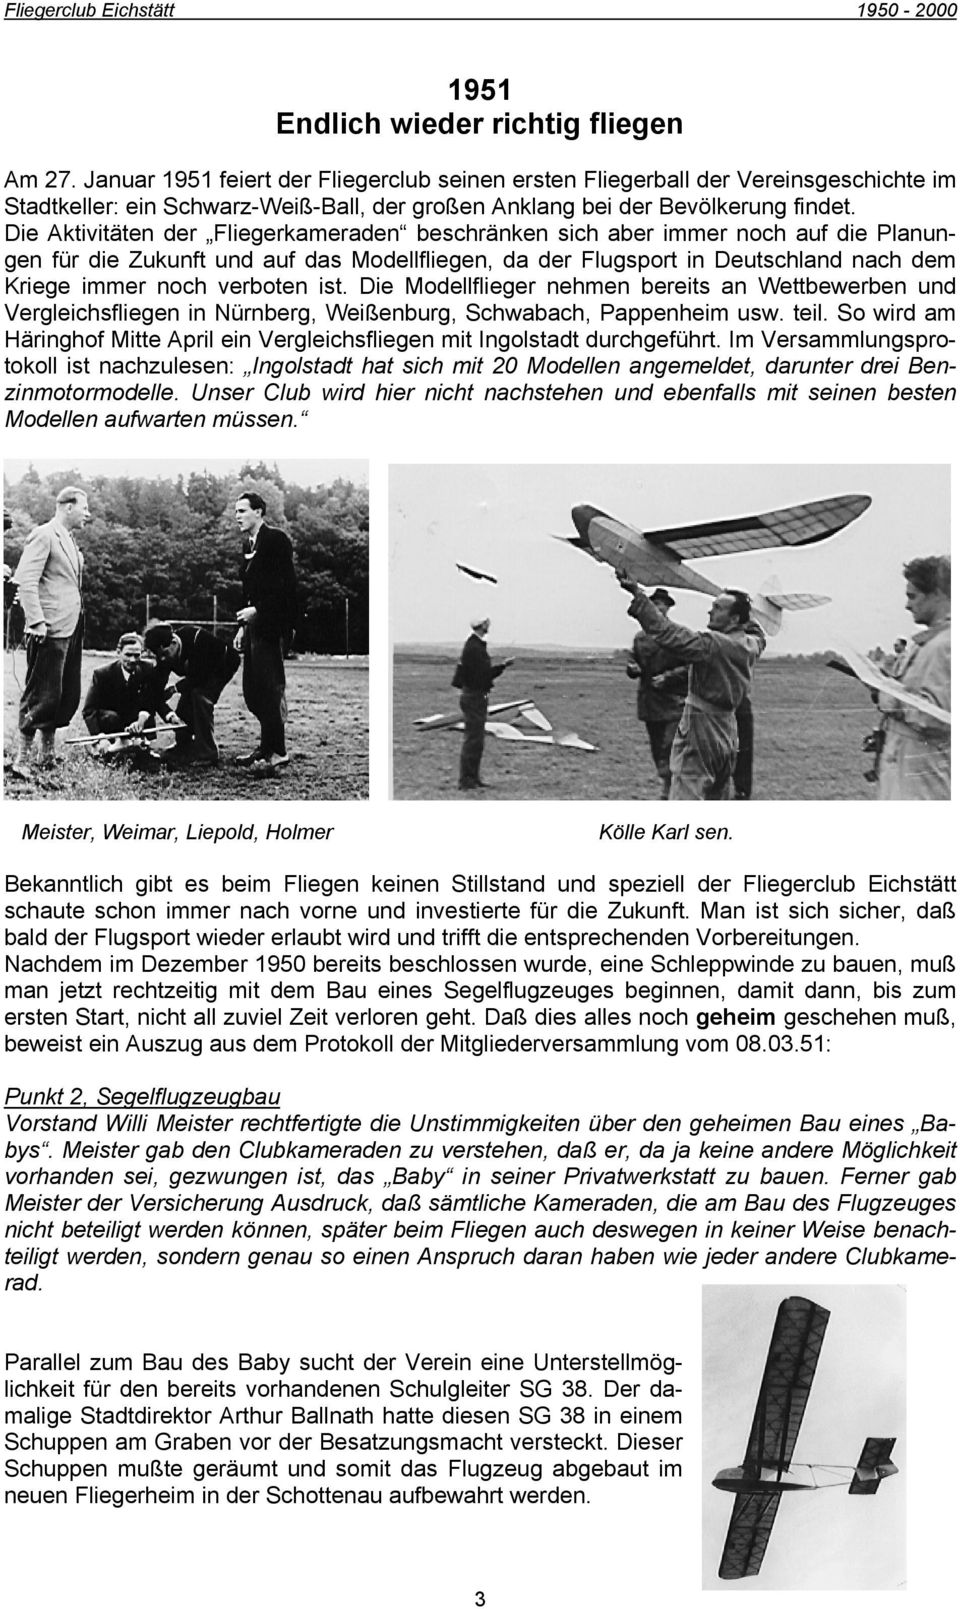 Die Aktivitäten der Fliegerkameraden beschränken sich aber immer noch auf die Planungen für die Zukunft und auf das Modellfliegen, da der Flugsport in Deutschland nach dem Kriege immer noch verboten